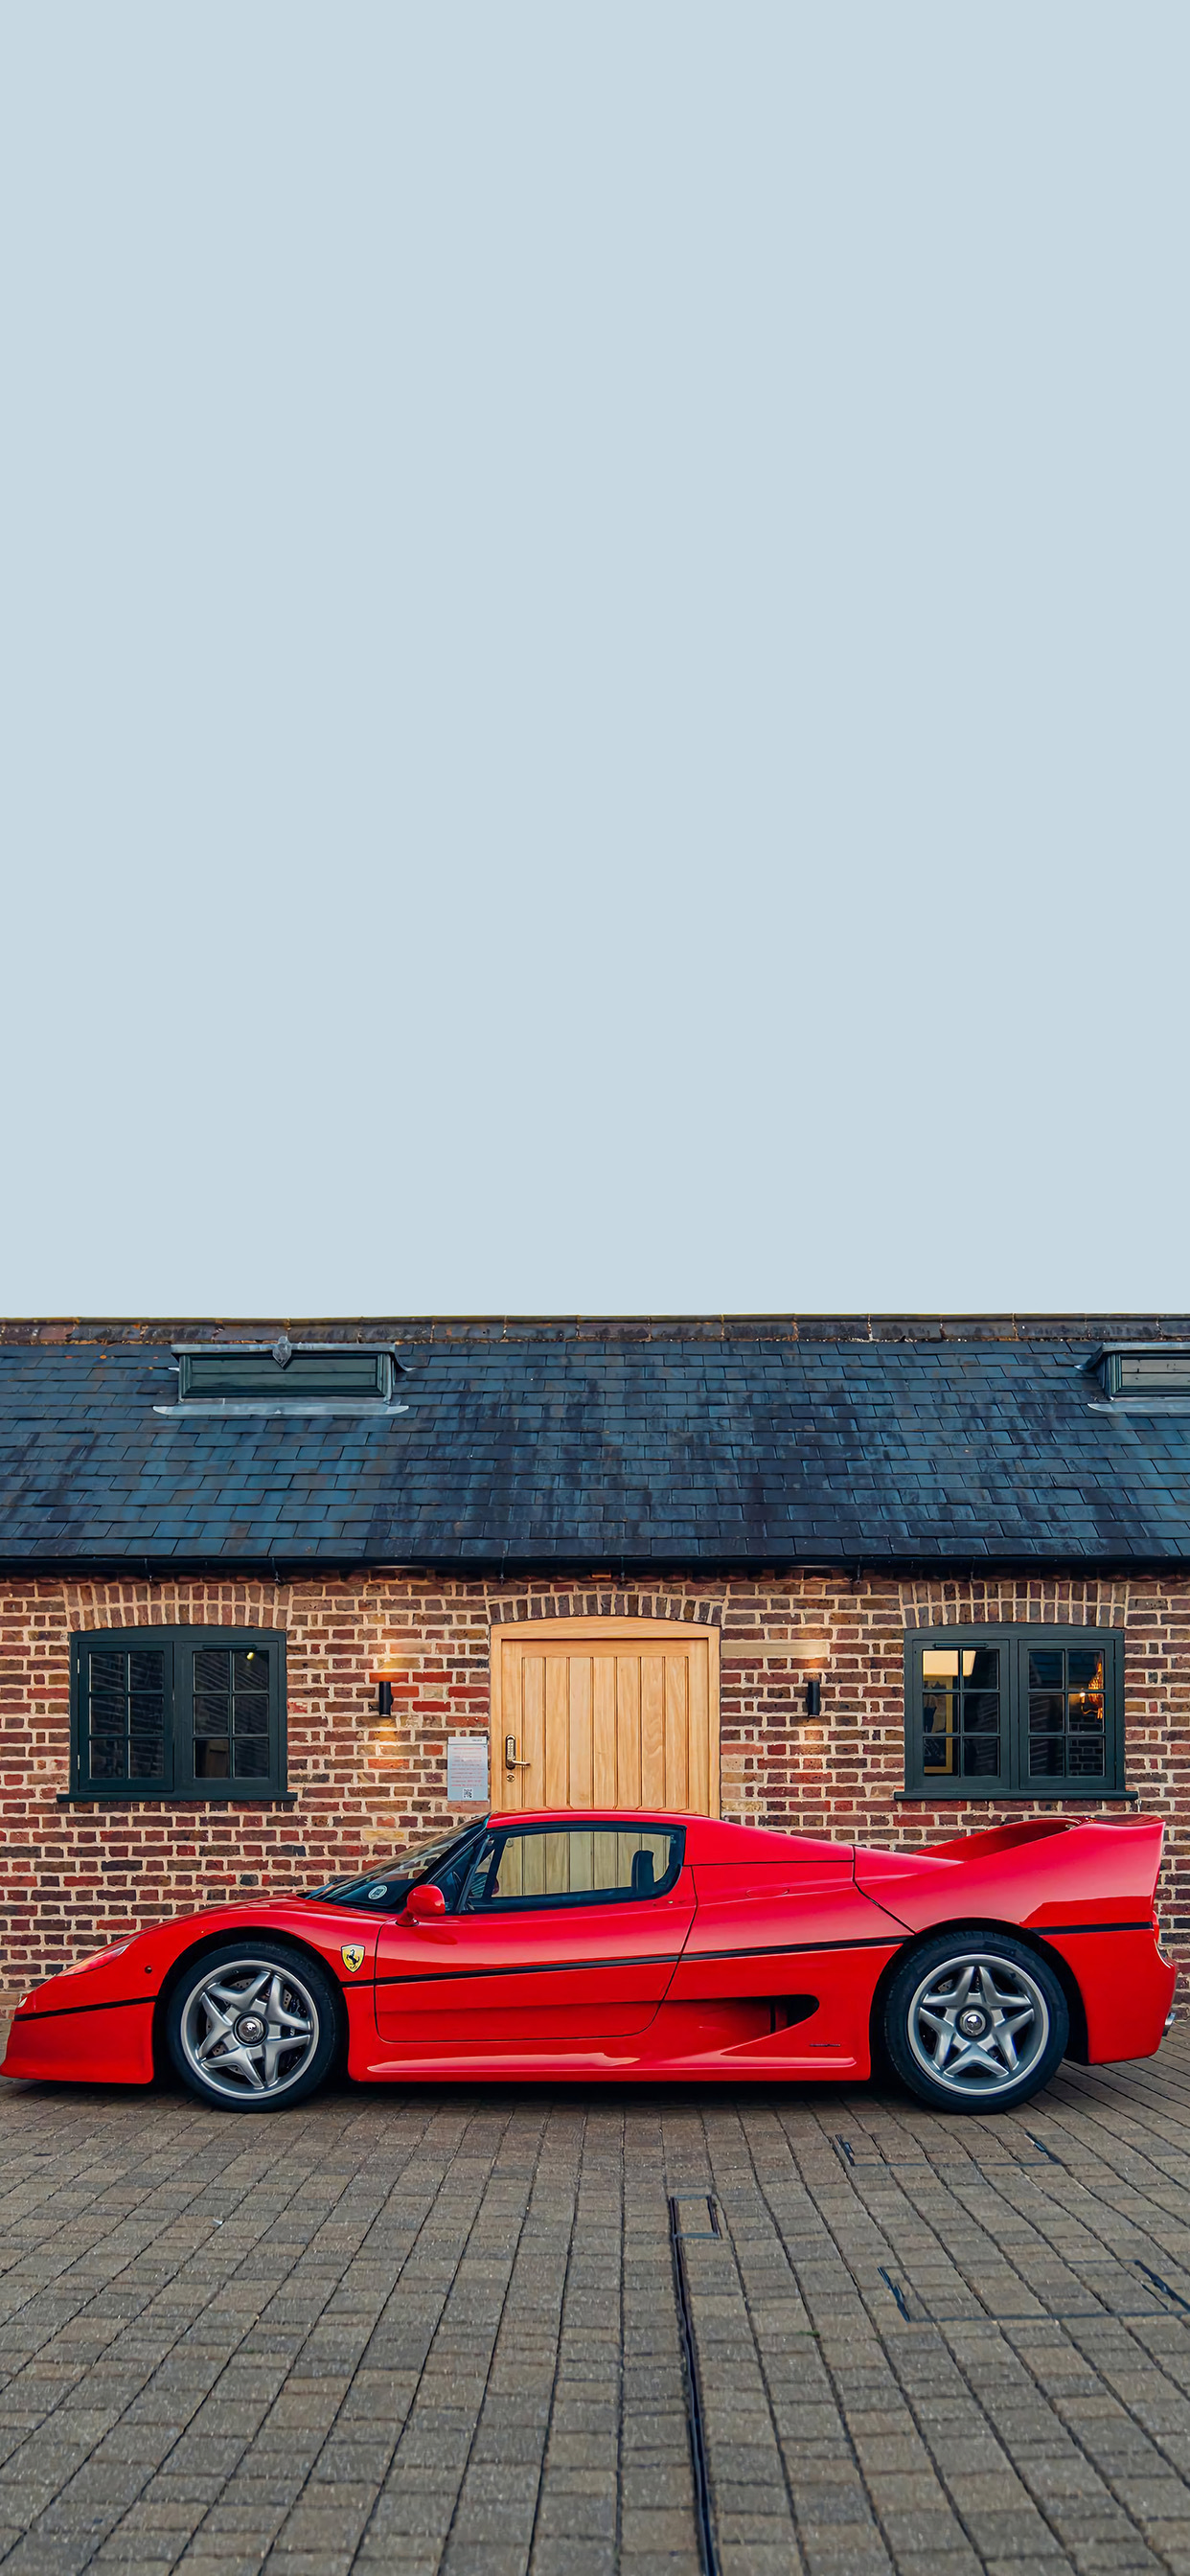 法拉利f50红色炫酷手机壁纸